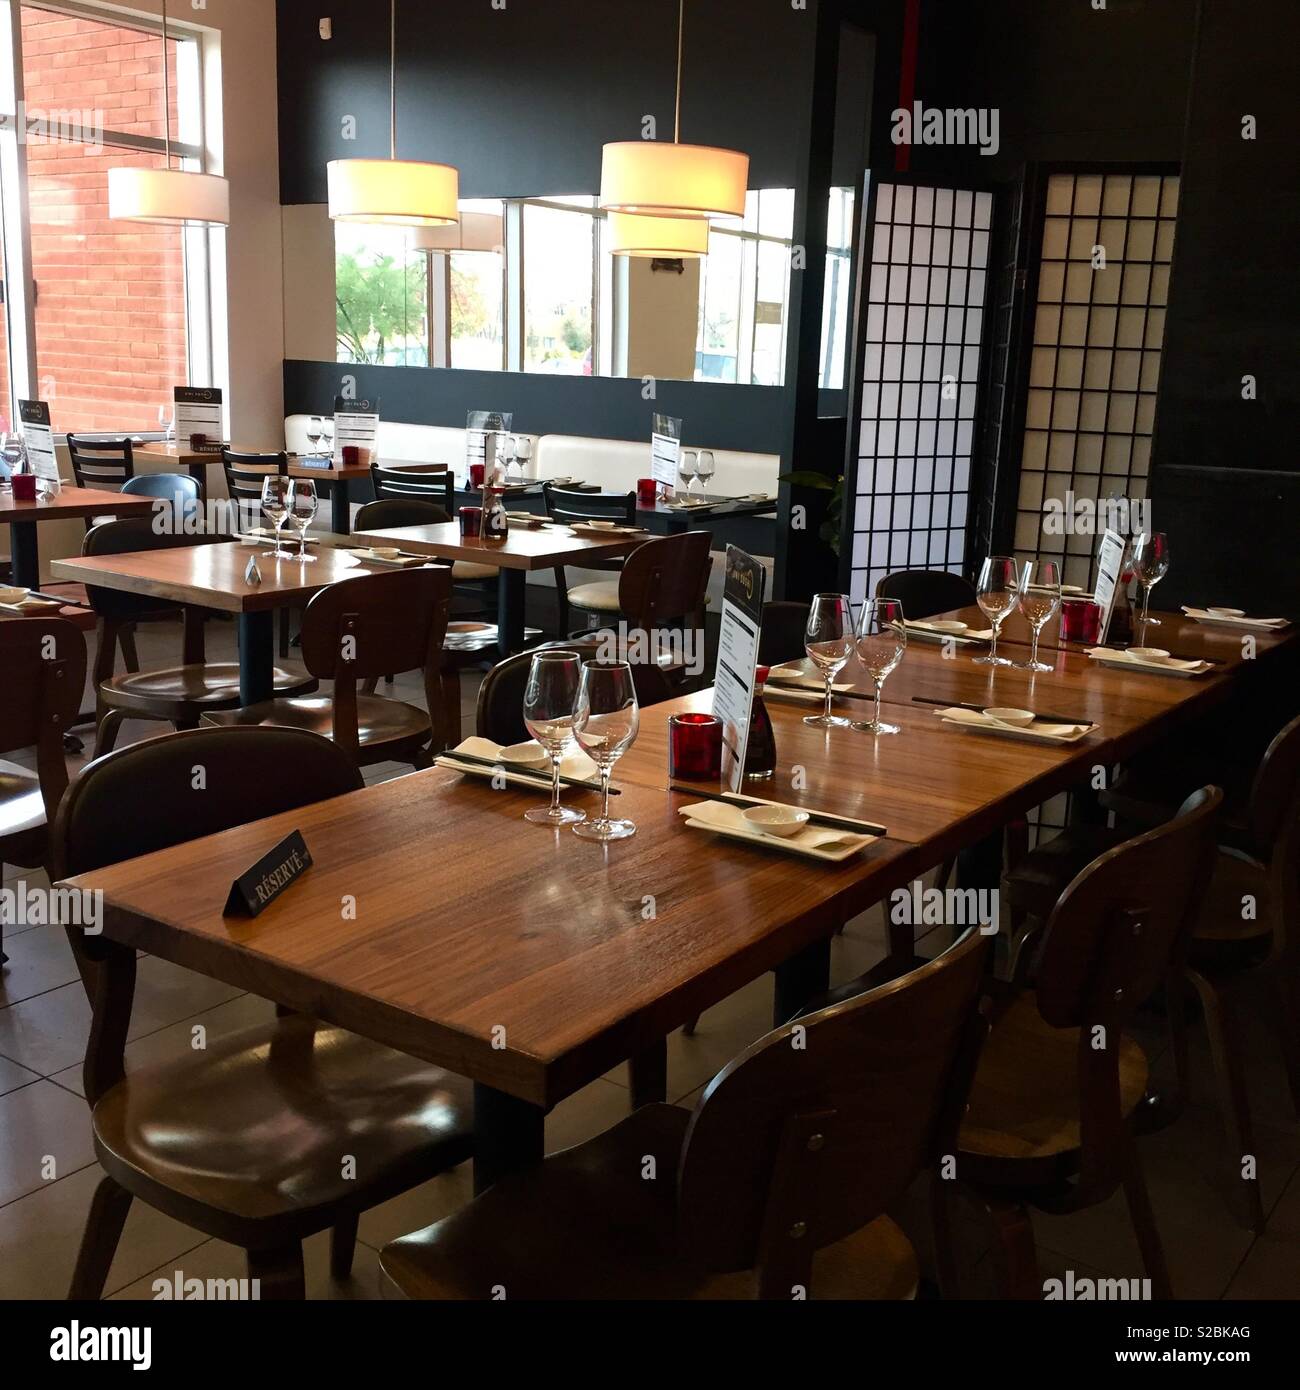 Asiatisches Restaurant - minimalistisches Interieur. Keine Personen. Braun Tabellen. Tische reserviert. Gedeckten Tischen. Stockfoto